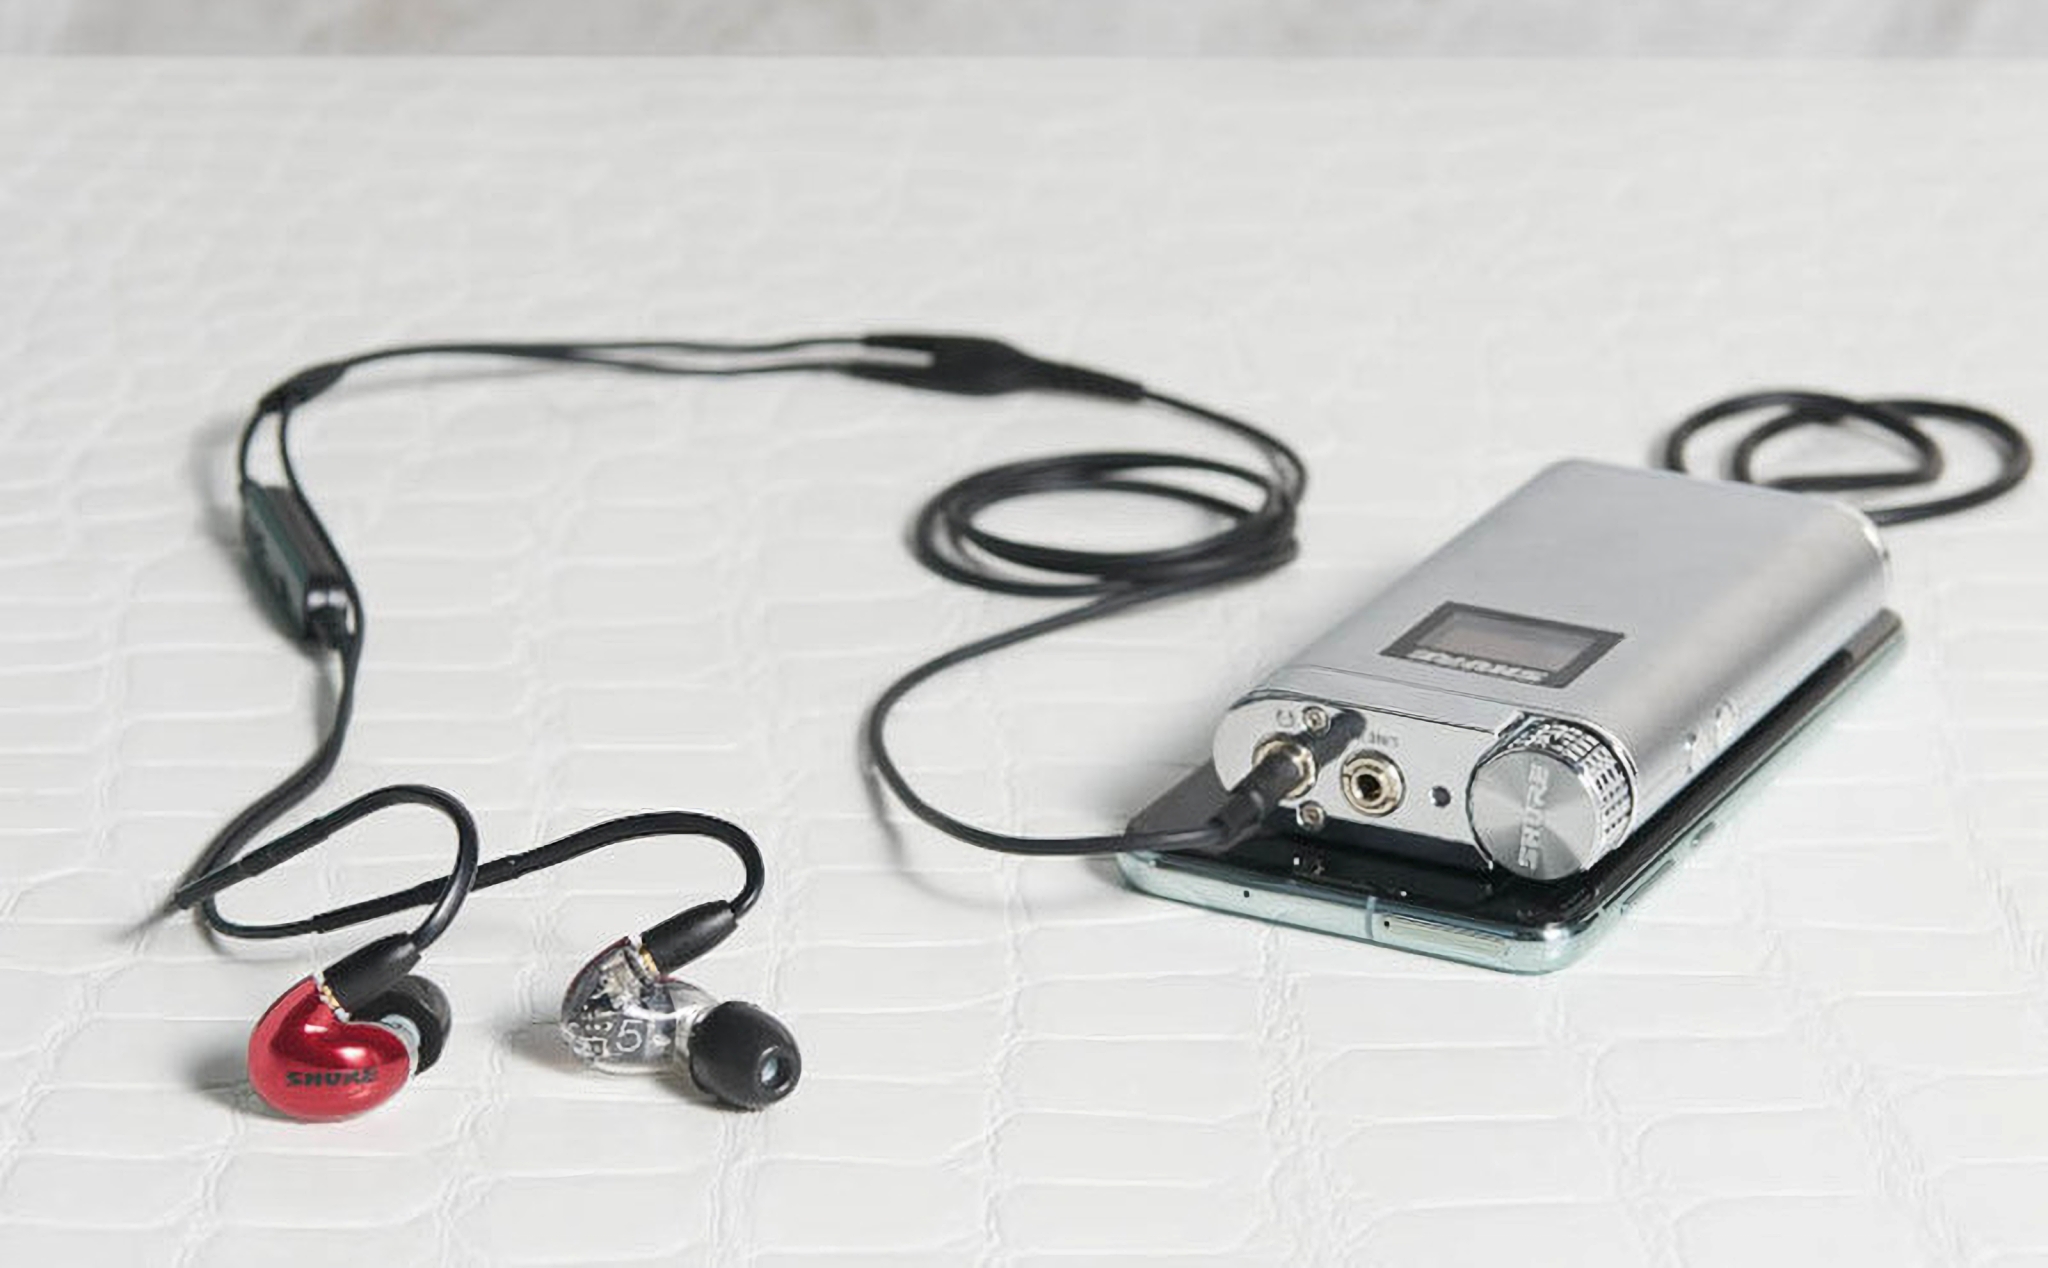 Shure giới thiệu ba mẫu tai nghe in-ear có dây thế hệ mới AONIC 3/4/5, thay đổi nhiều so với dòng SE